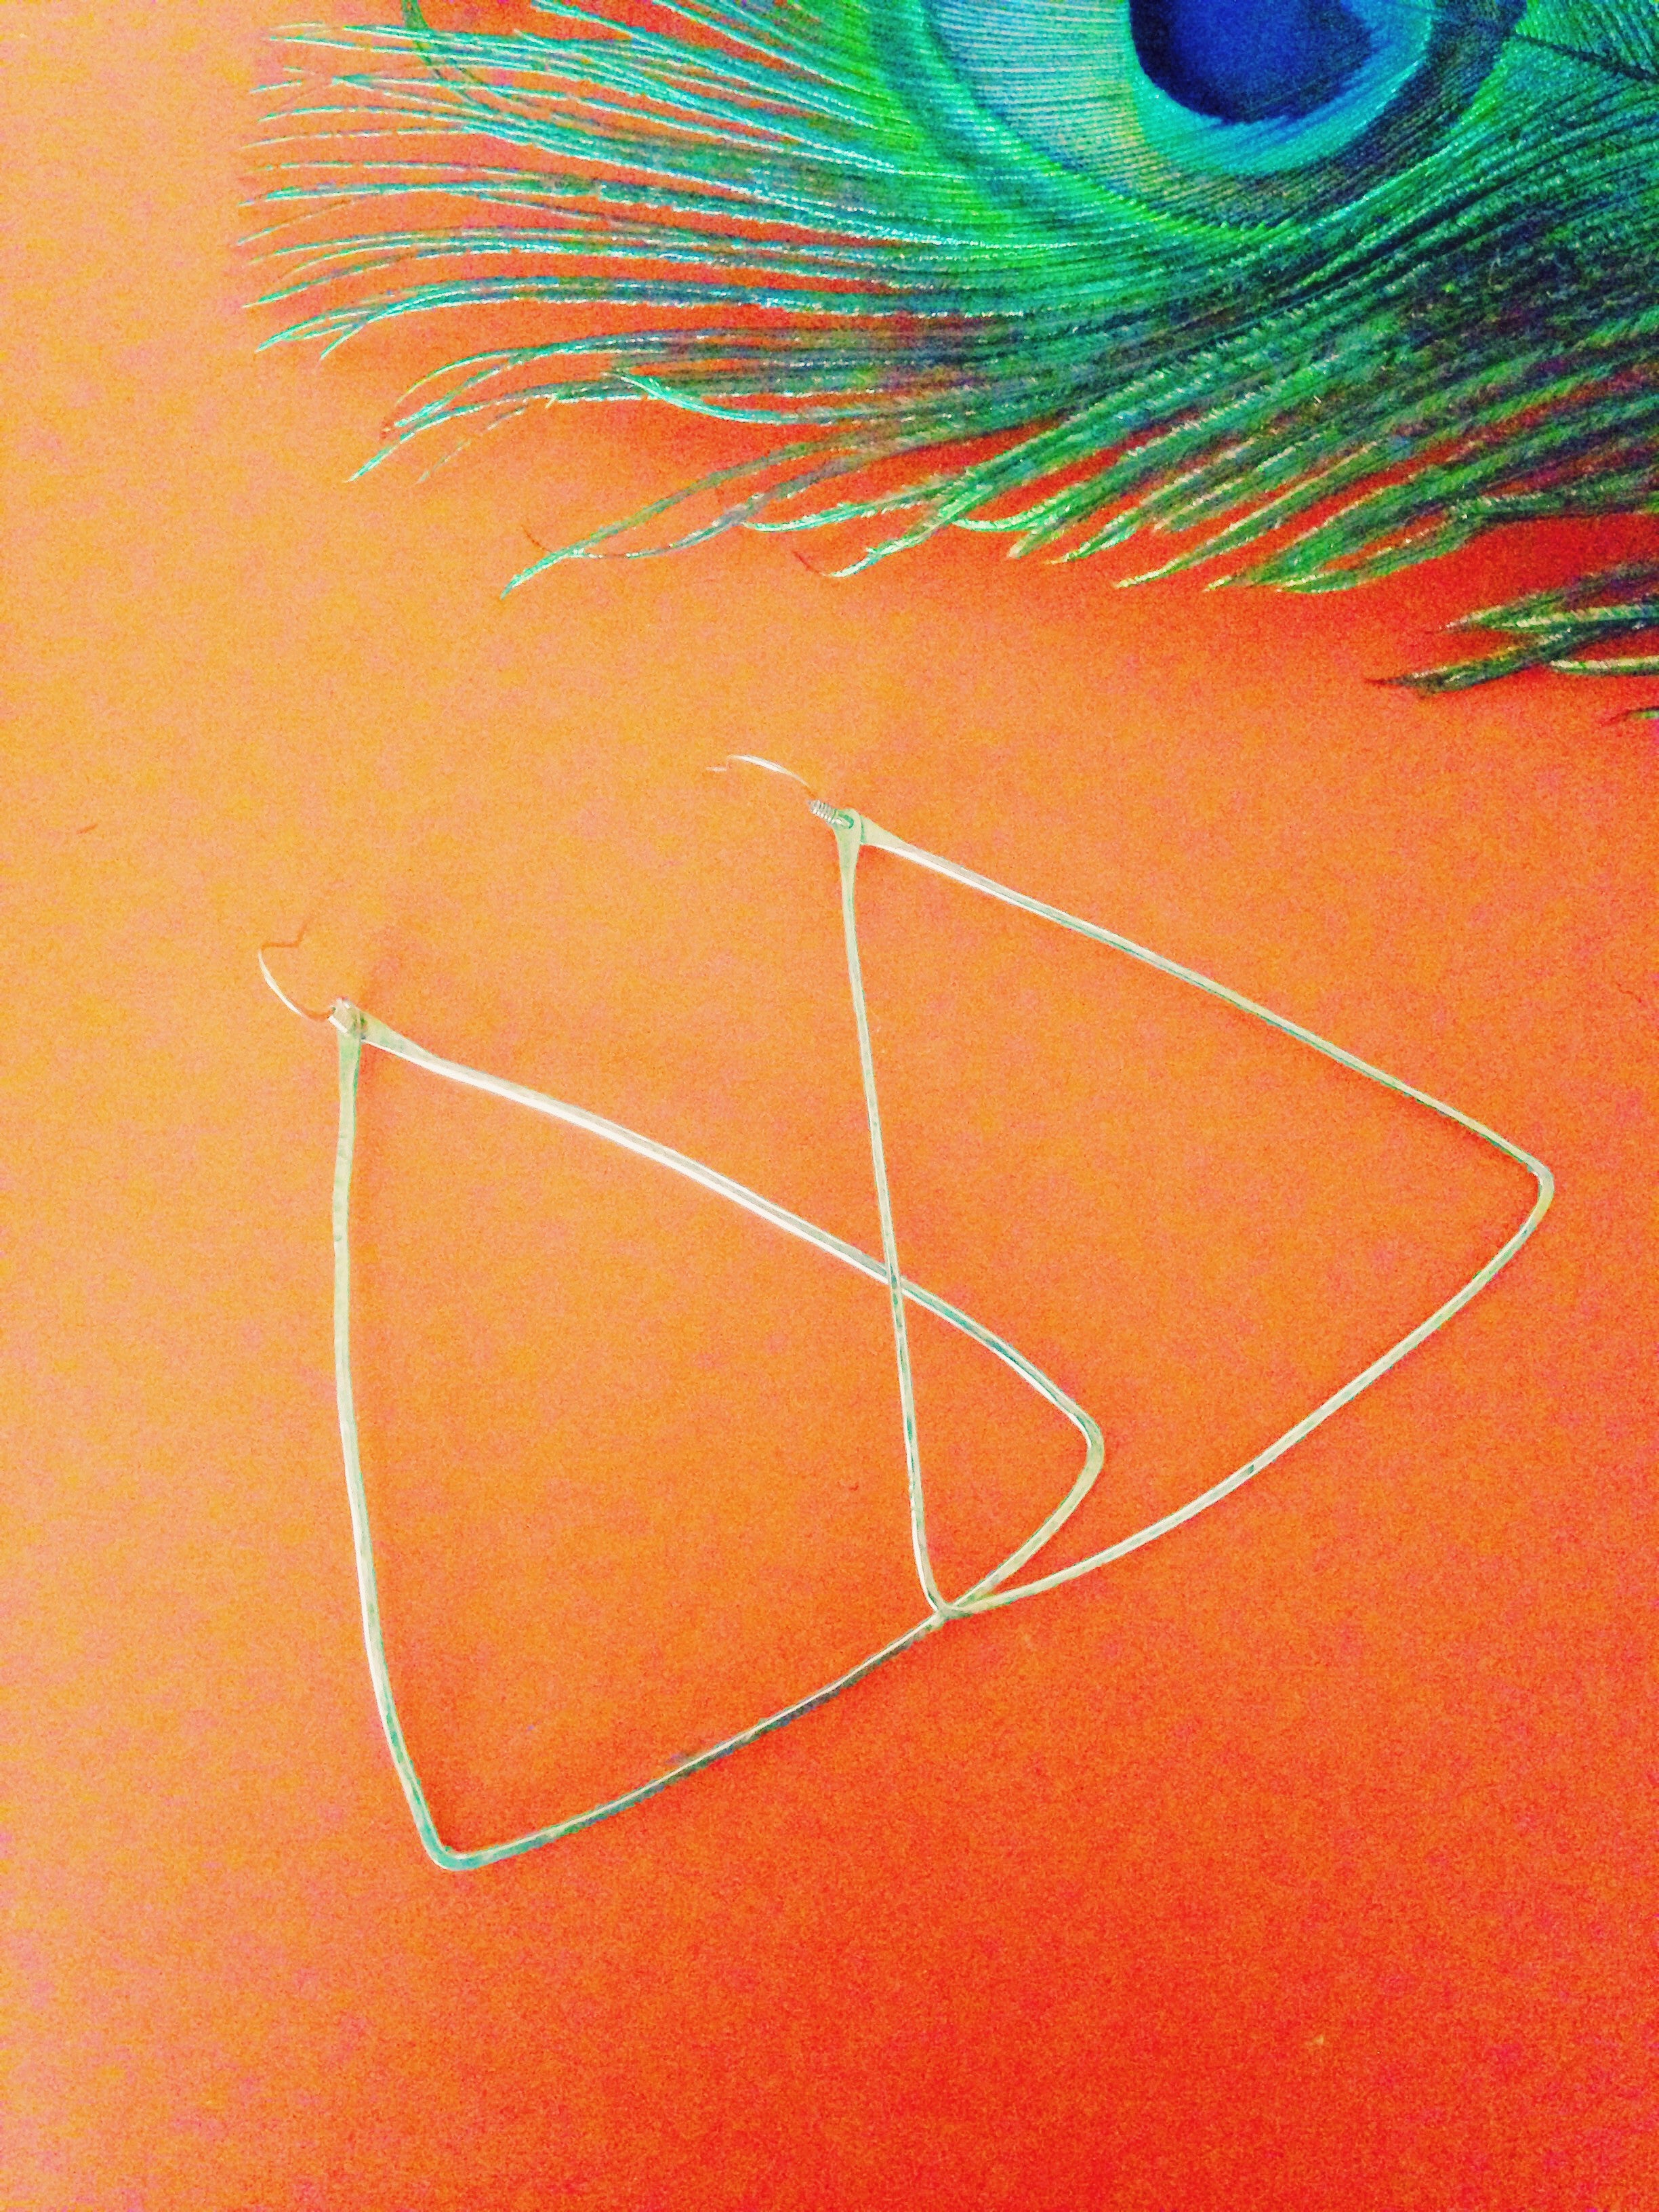 Hammered Triangle Hoop Earrings